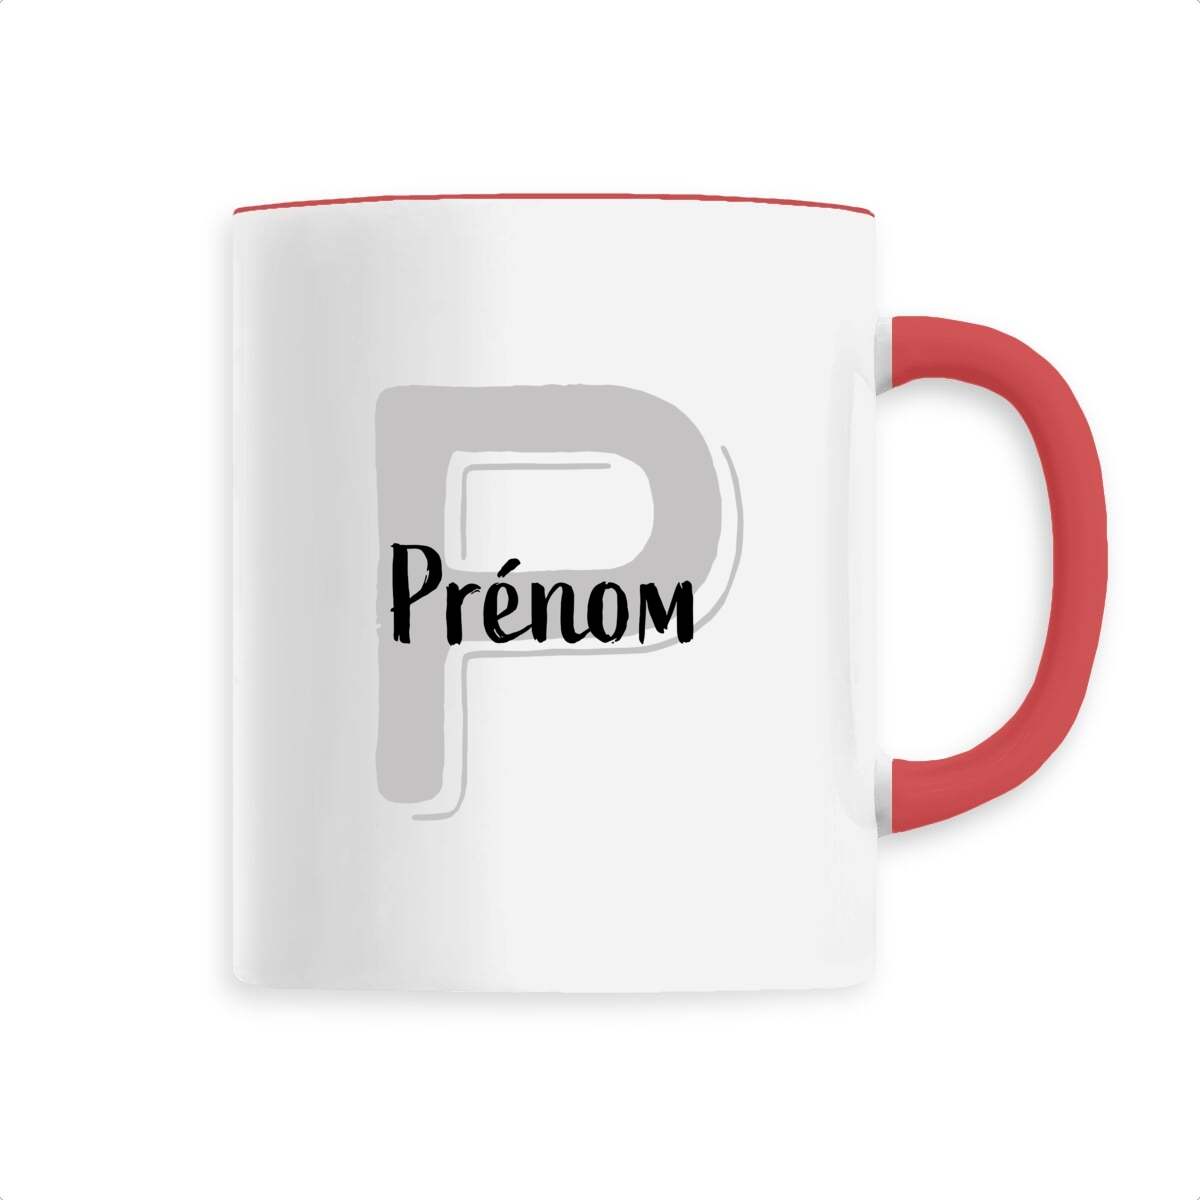 Mug en Céramique - Prénom, mug personnalisé avec prénom et initiale de T-French, mug avec prénom, mug personnalisable, mug prénom personnalisé, tasse personnalisé, mug prénom et initiale, mug avec prénom homme et femme, mug idée cadeau, mug prénom, mug personnalisé rouge